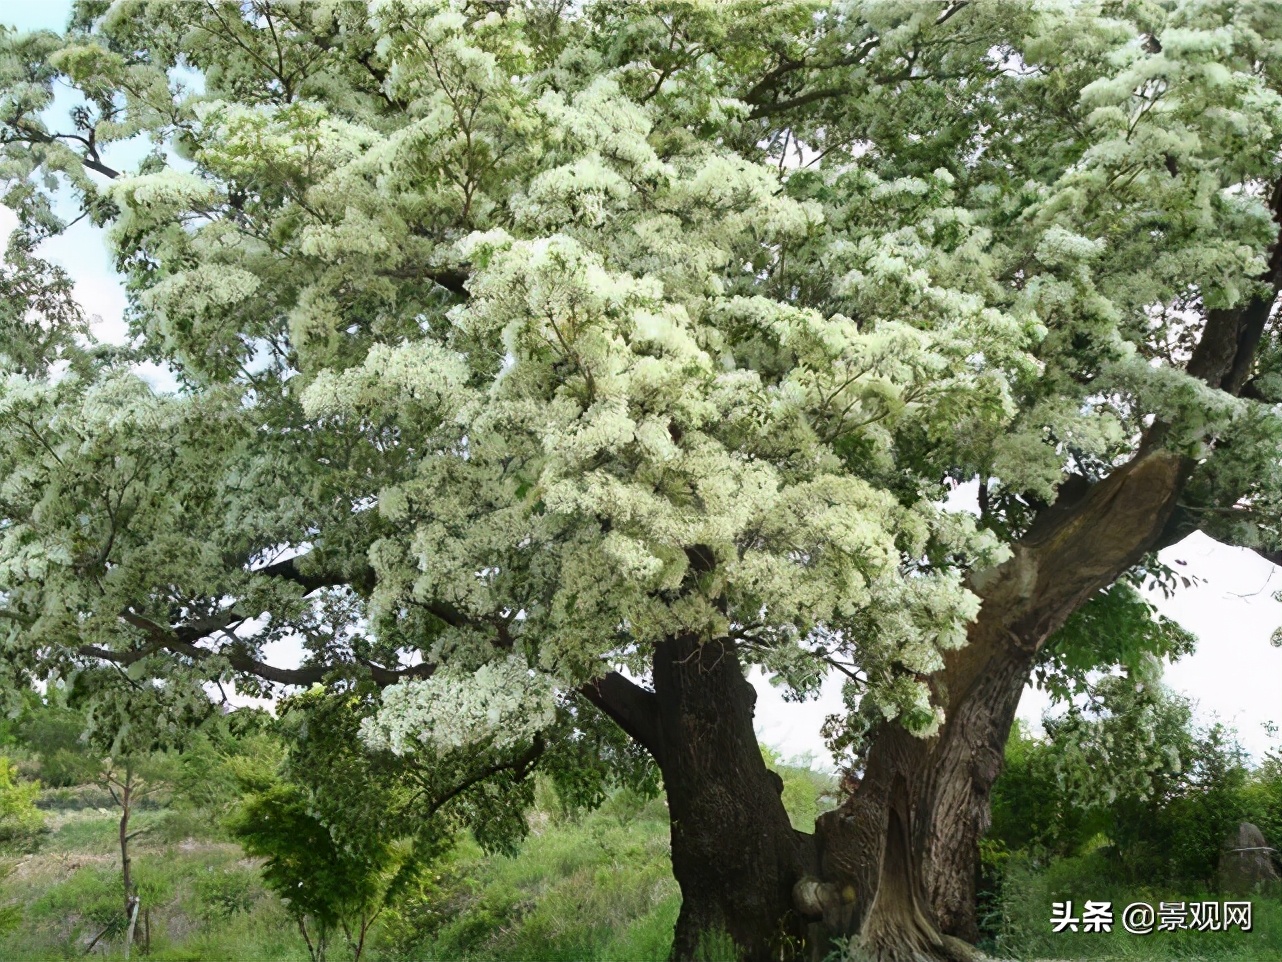 流苏树,适合在北方种植的珍贵树种